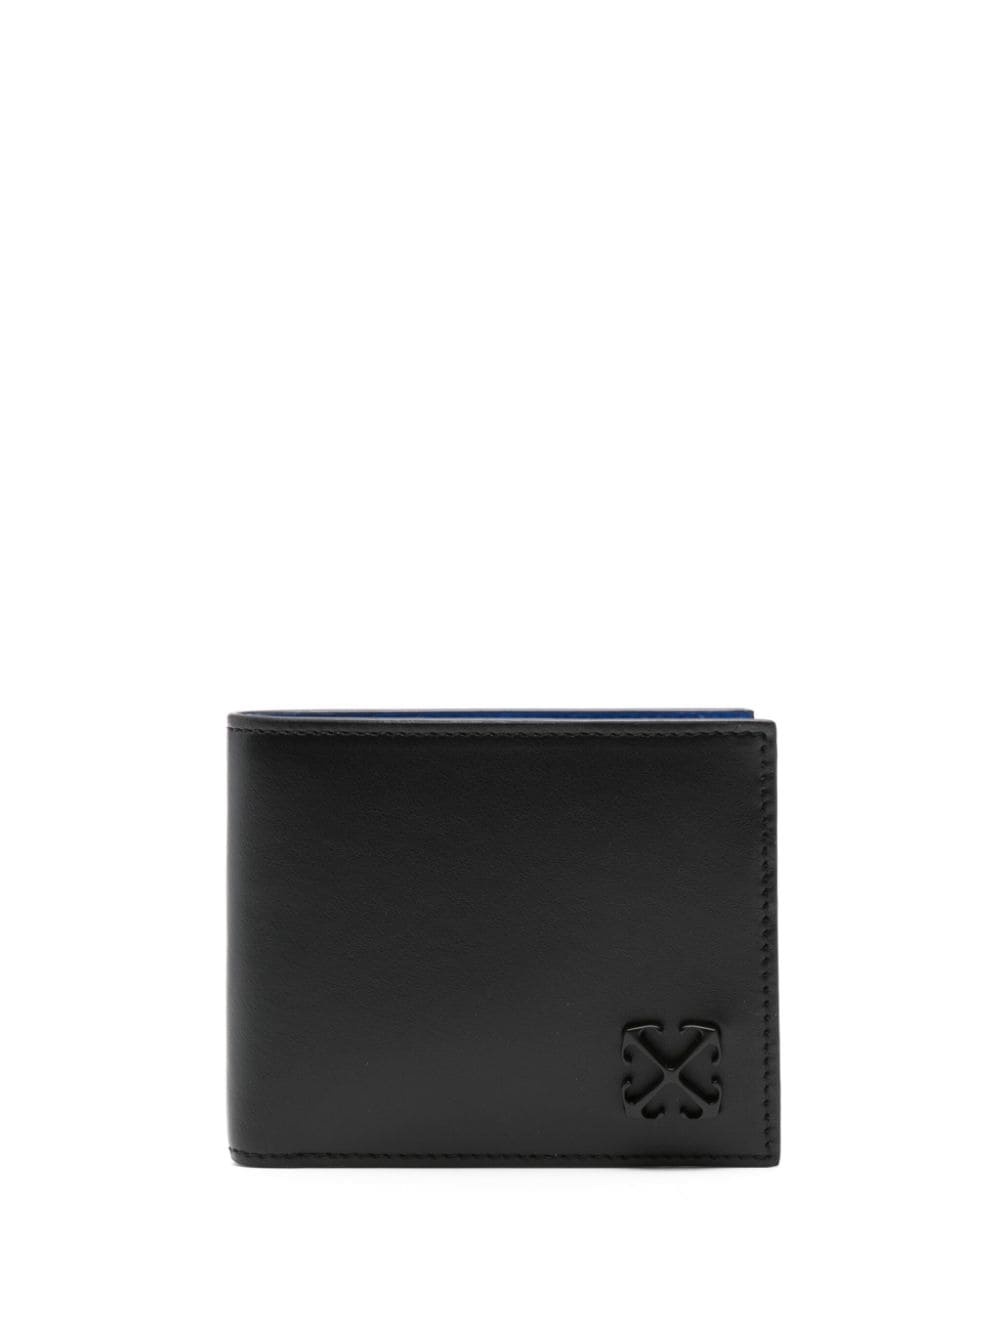 Arrows-motif leather wallet - 1